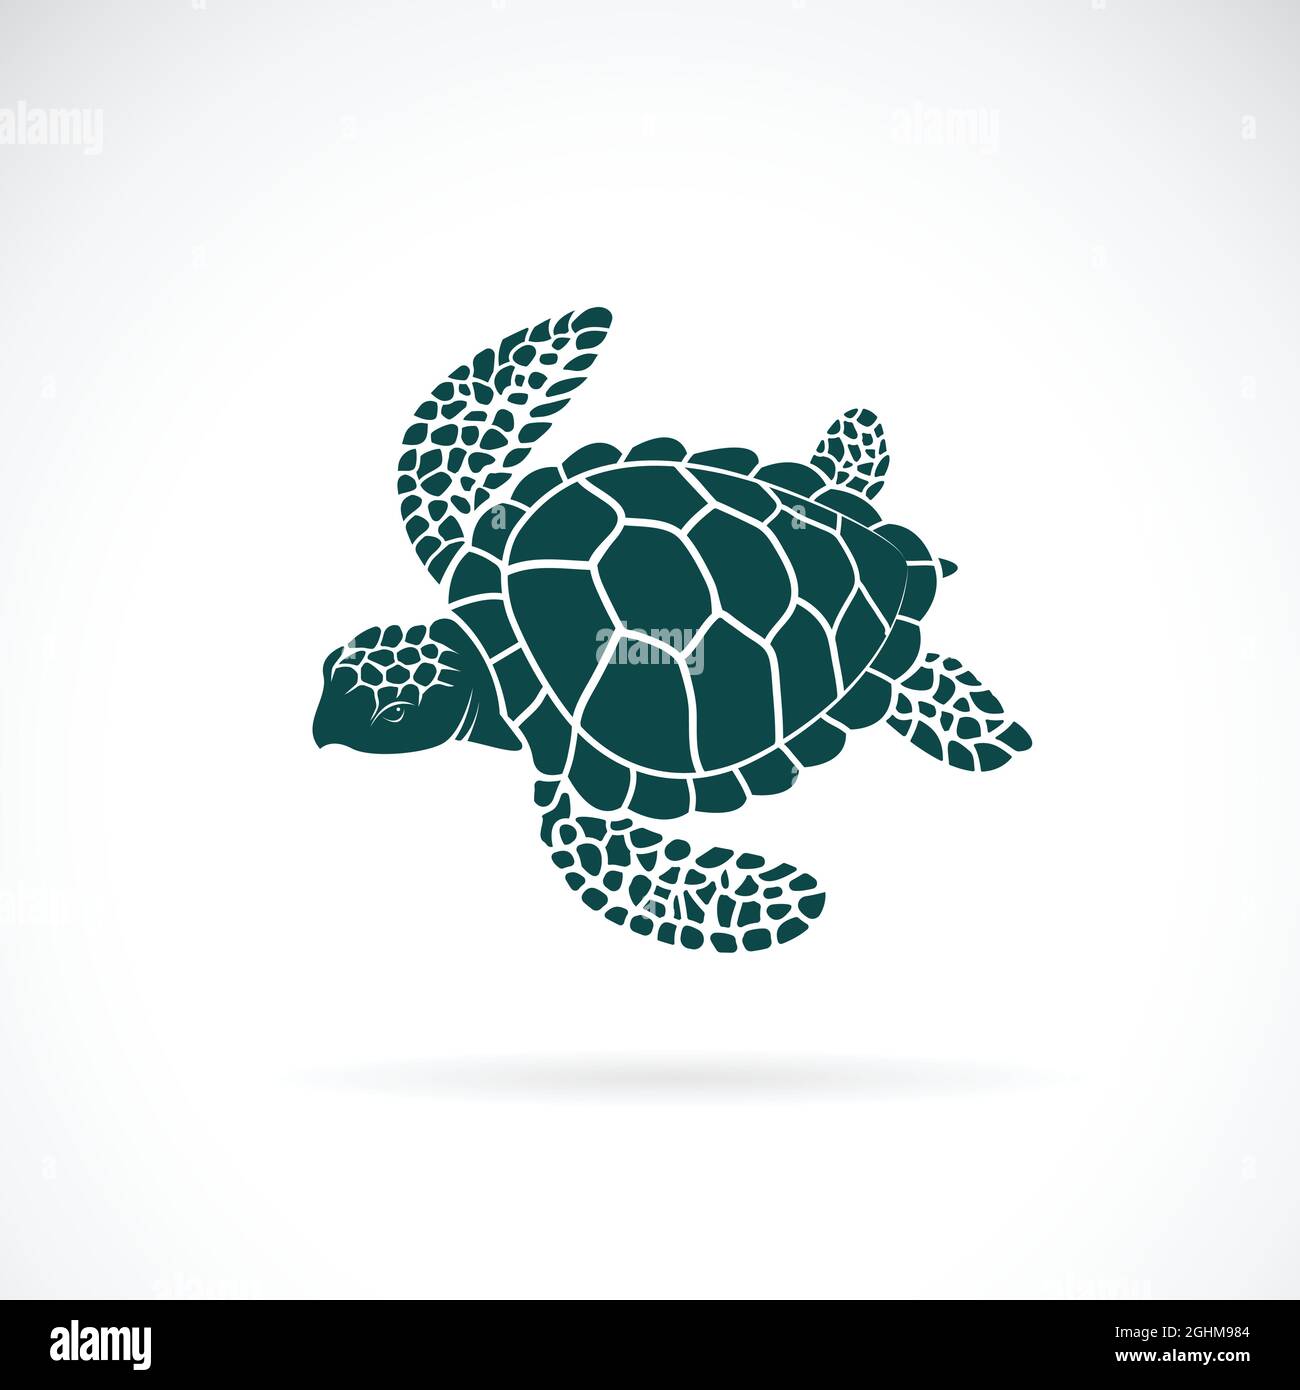 Vektor von Schildkröte-Design auf weißem Hintergrund. Wilde Tiere. Unterwasser-Tier. Schildkröten-Symbol oder -Logo. Leicht editierbare Vektorgrafik mit Ebenen. Stock Vektor